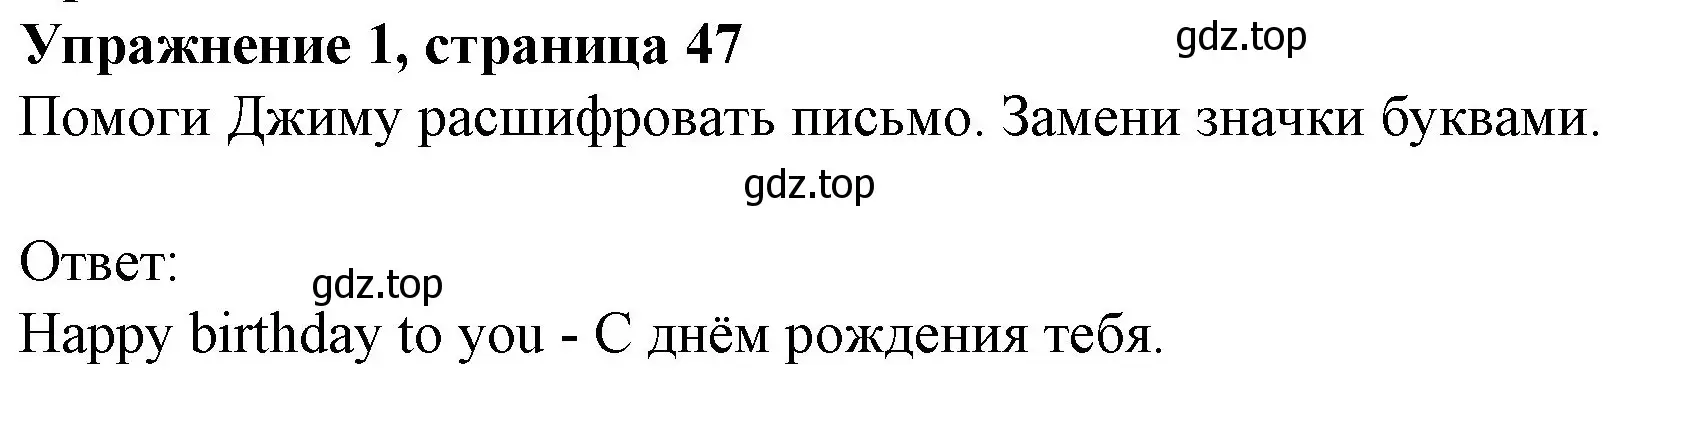 Решение номер 1 (страница 47) гдз по английскому языку 3 класс Биболетова, Денисенко, рабочая тетрадь